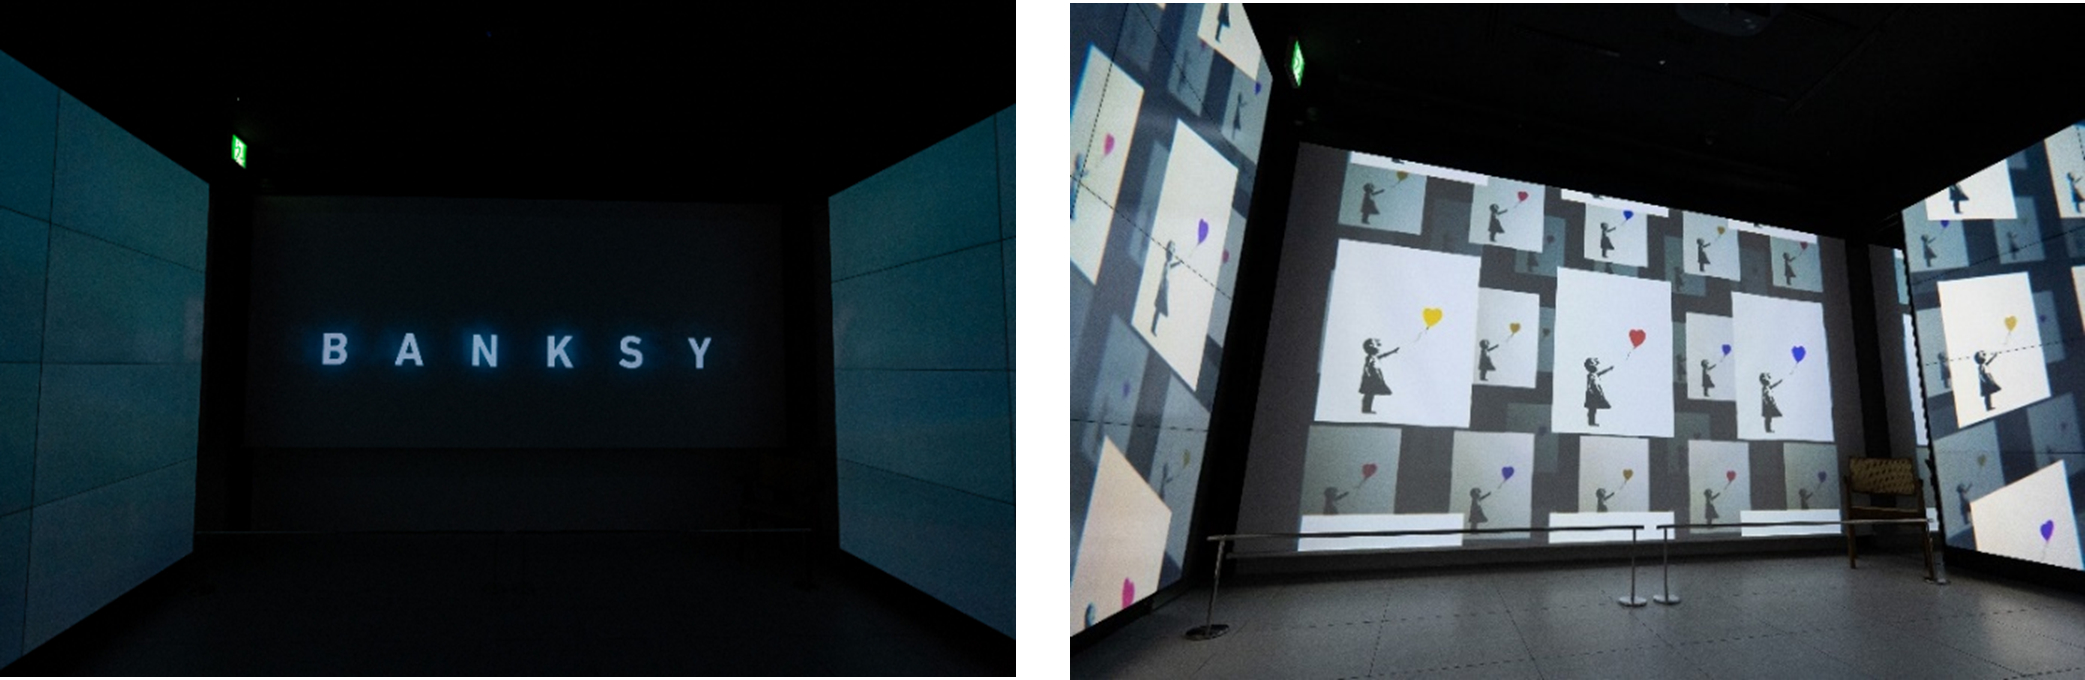 バンクシー展 GMOデジタル美術館 東京・渋谷』 渋谷フクラスにリニューアルオープン SPICE エンタメ特化型情報メディア スパイス